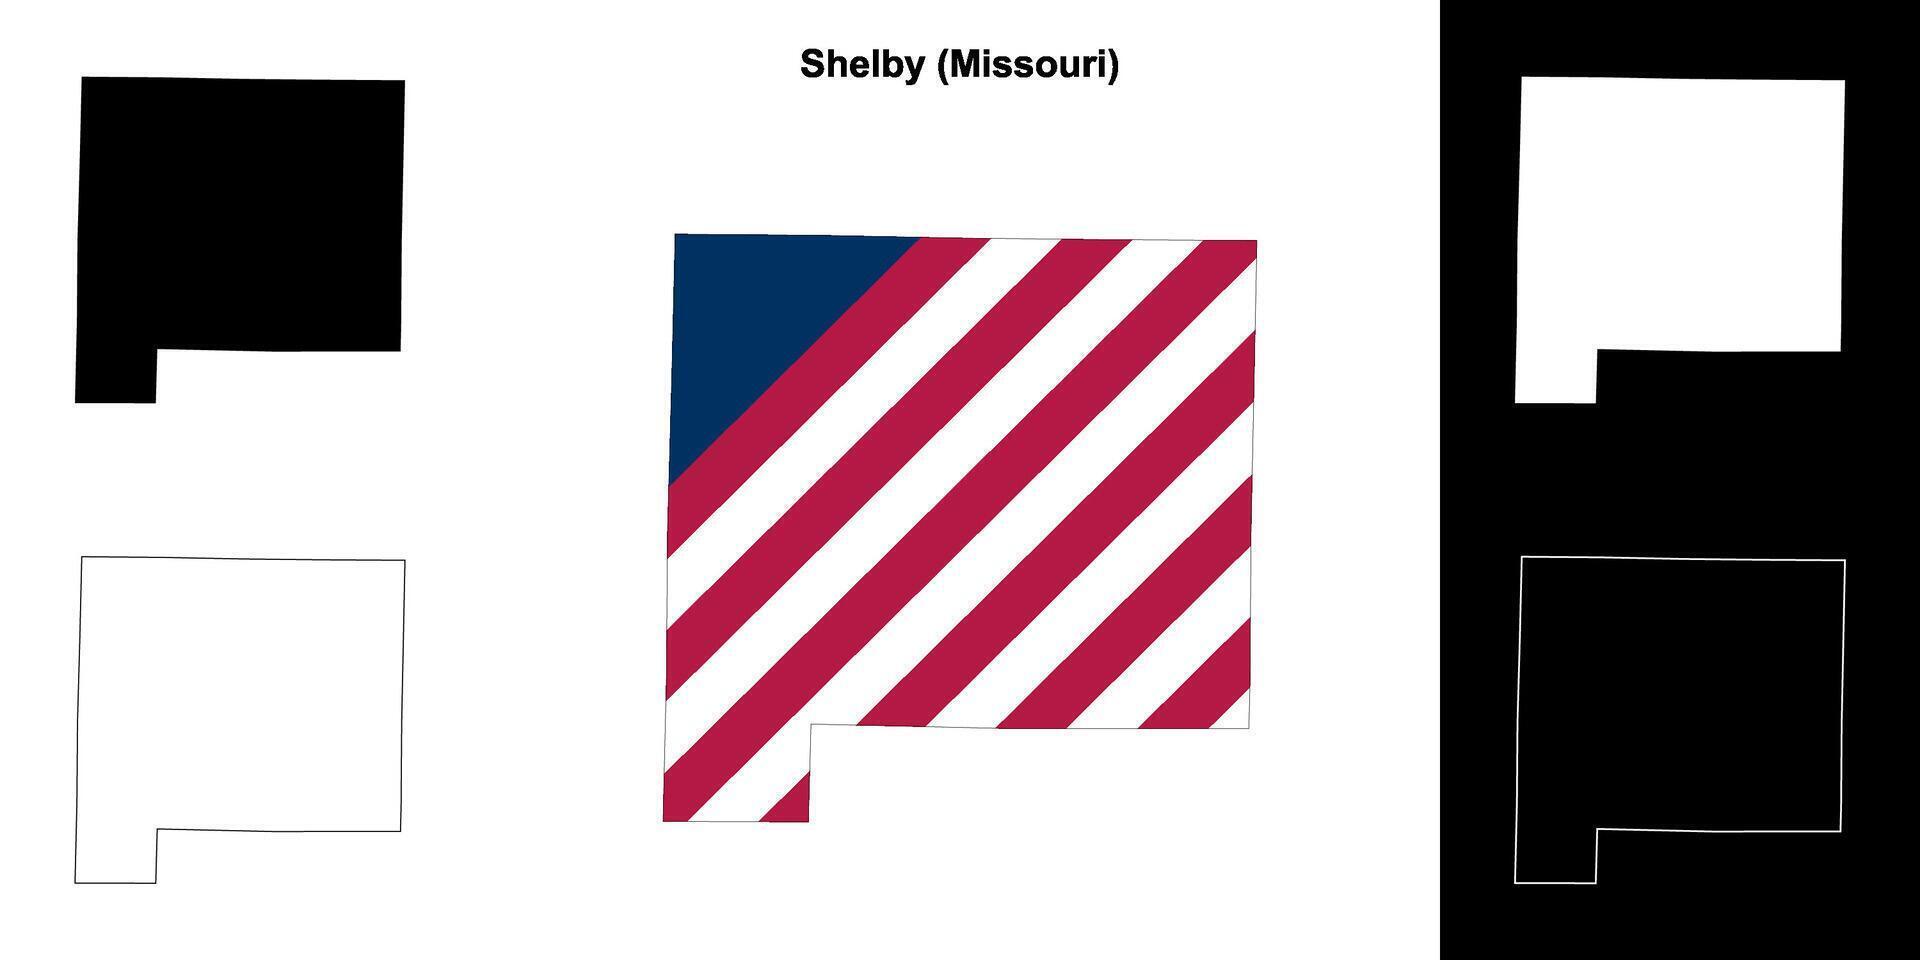 shelby condado, Missouri esboço mapa conjunto vetor